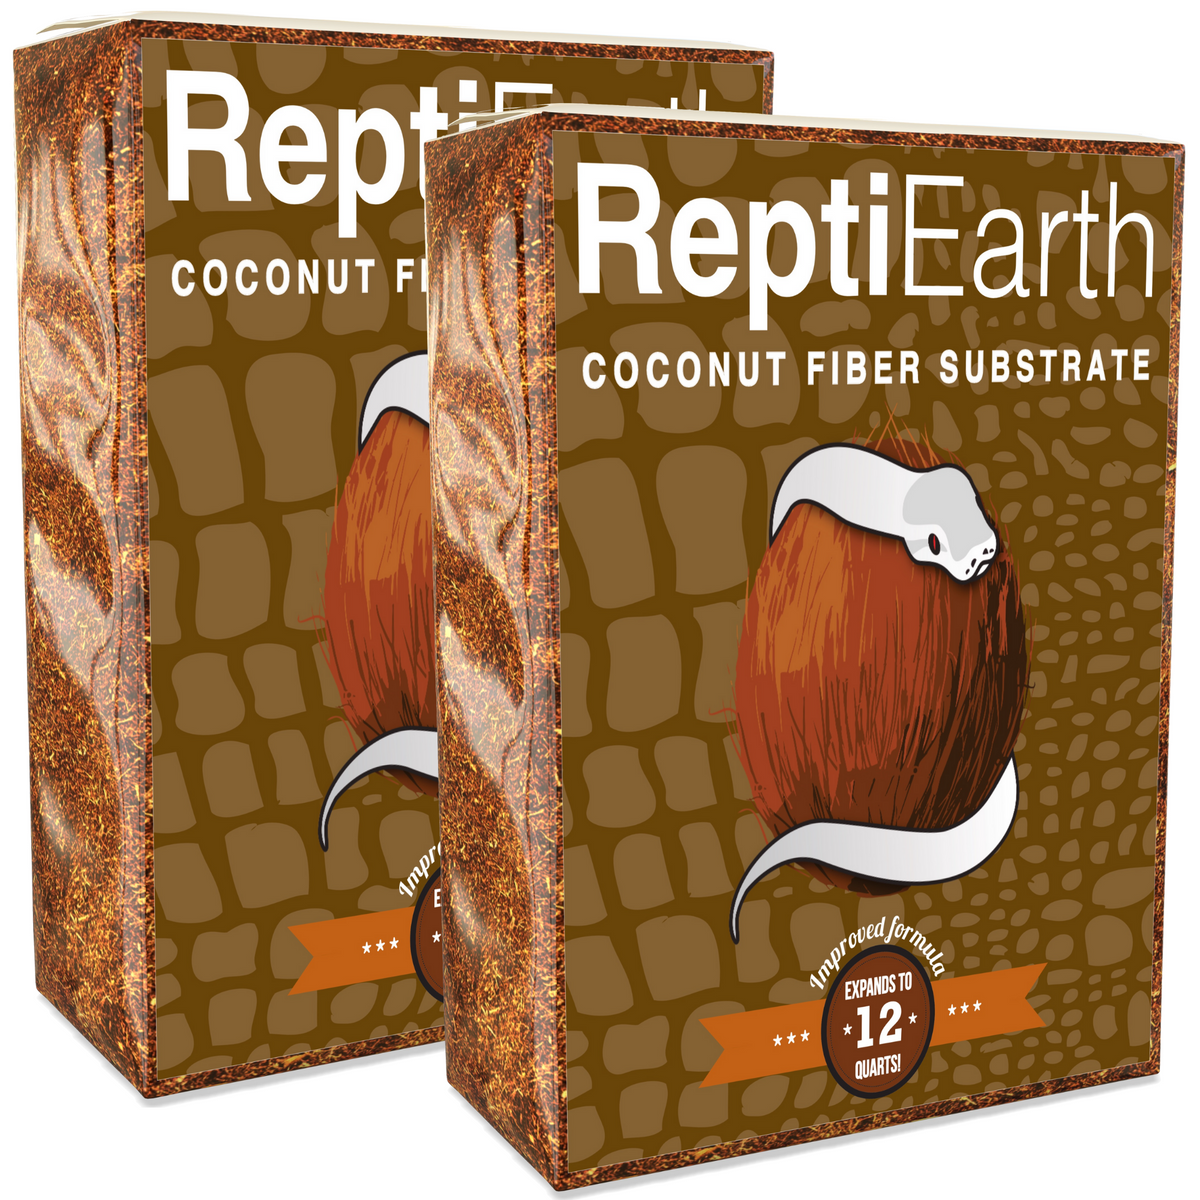 ReptiEarth Fine Coconut Fiber Mix; Ready to Use